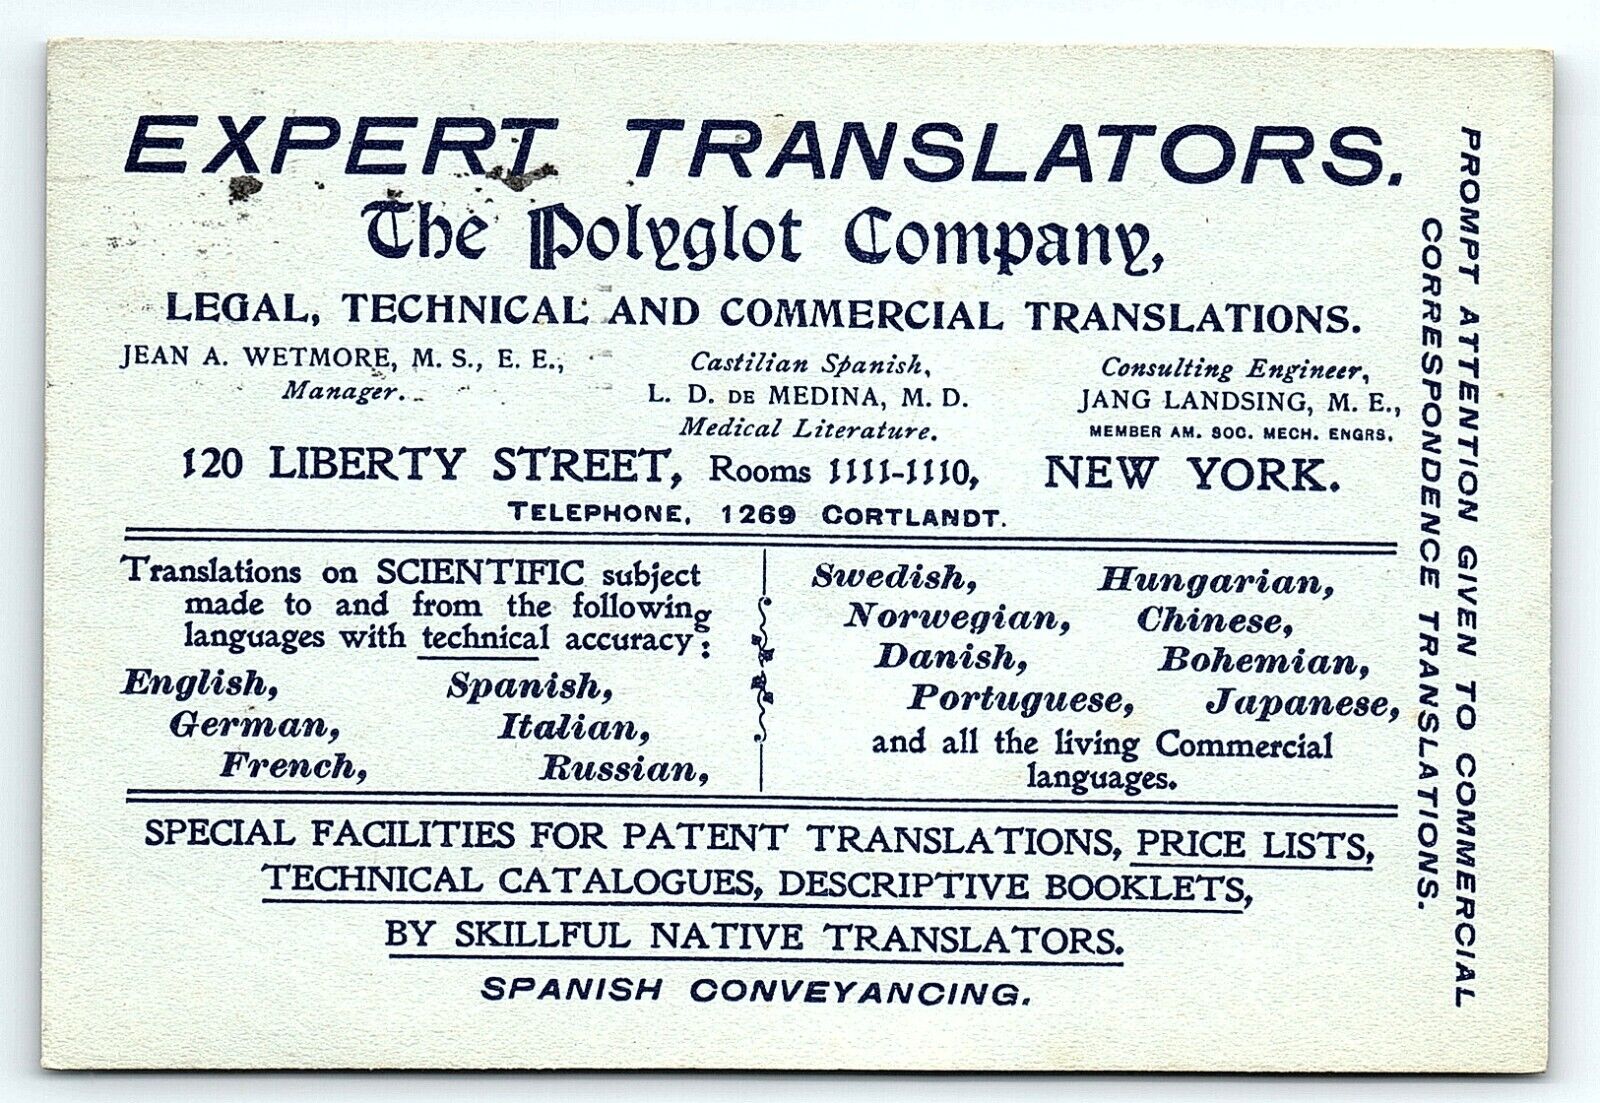 1902 ADVERTISING POSTCARD THE POLYGLOT COMPANY NY EXPERT TRANSLATORS Z4111